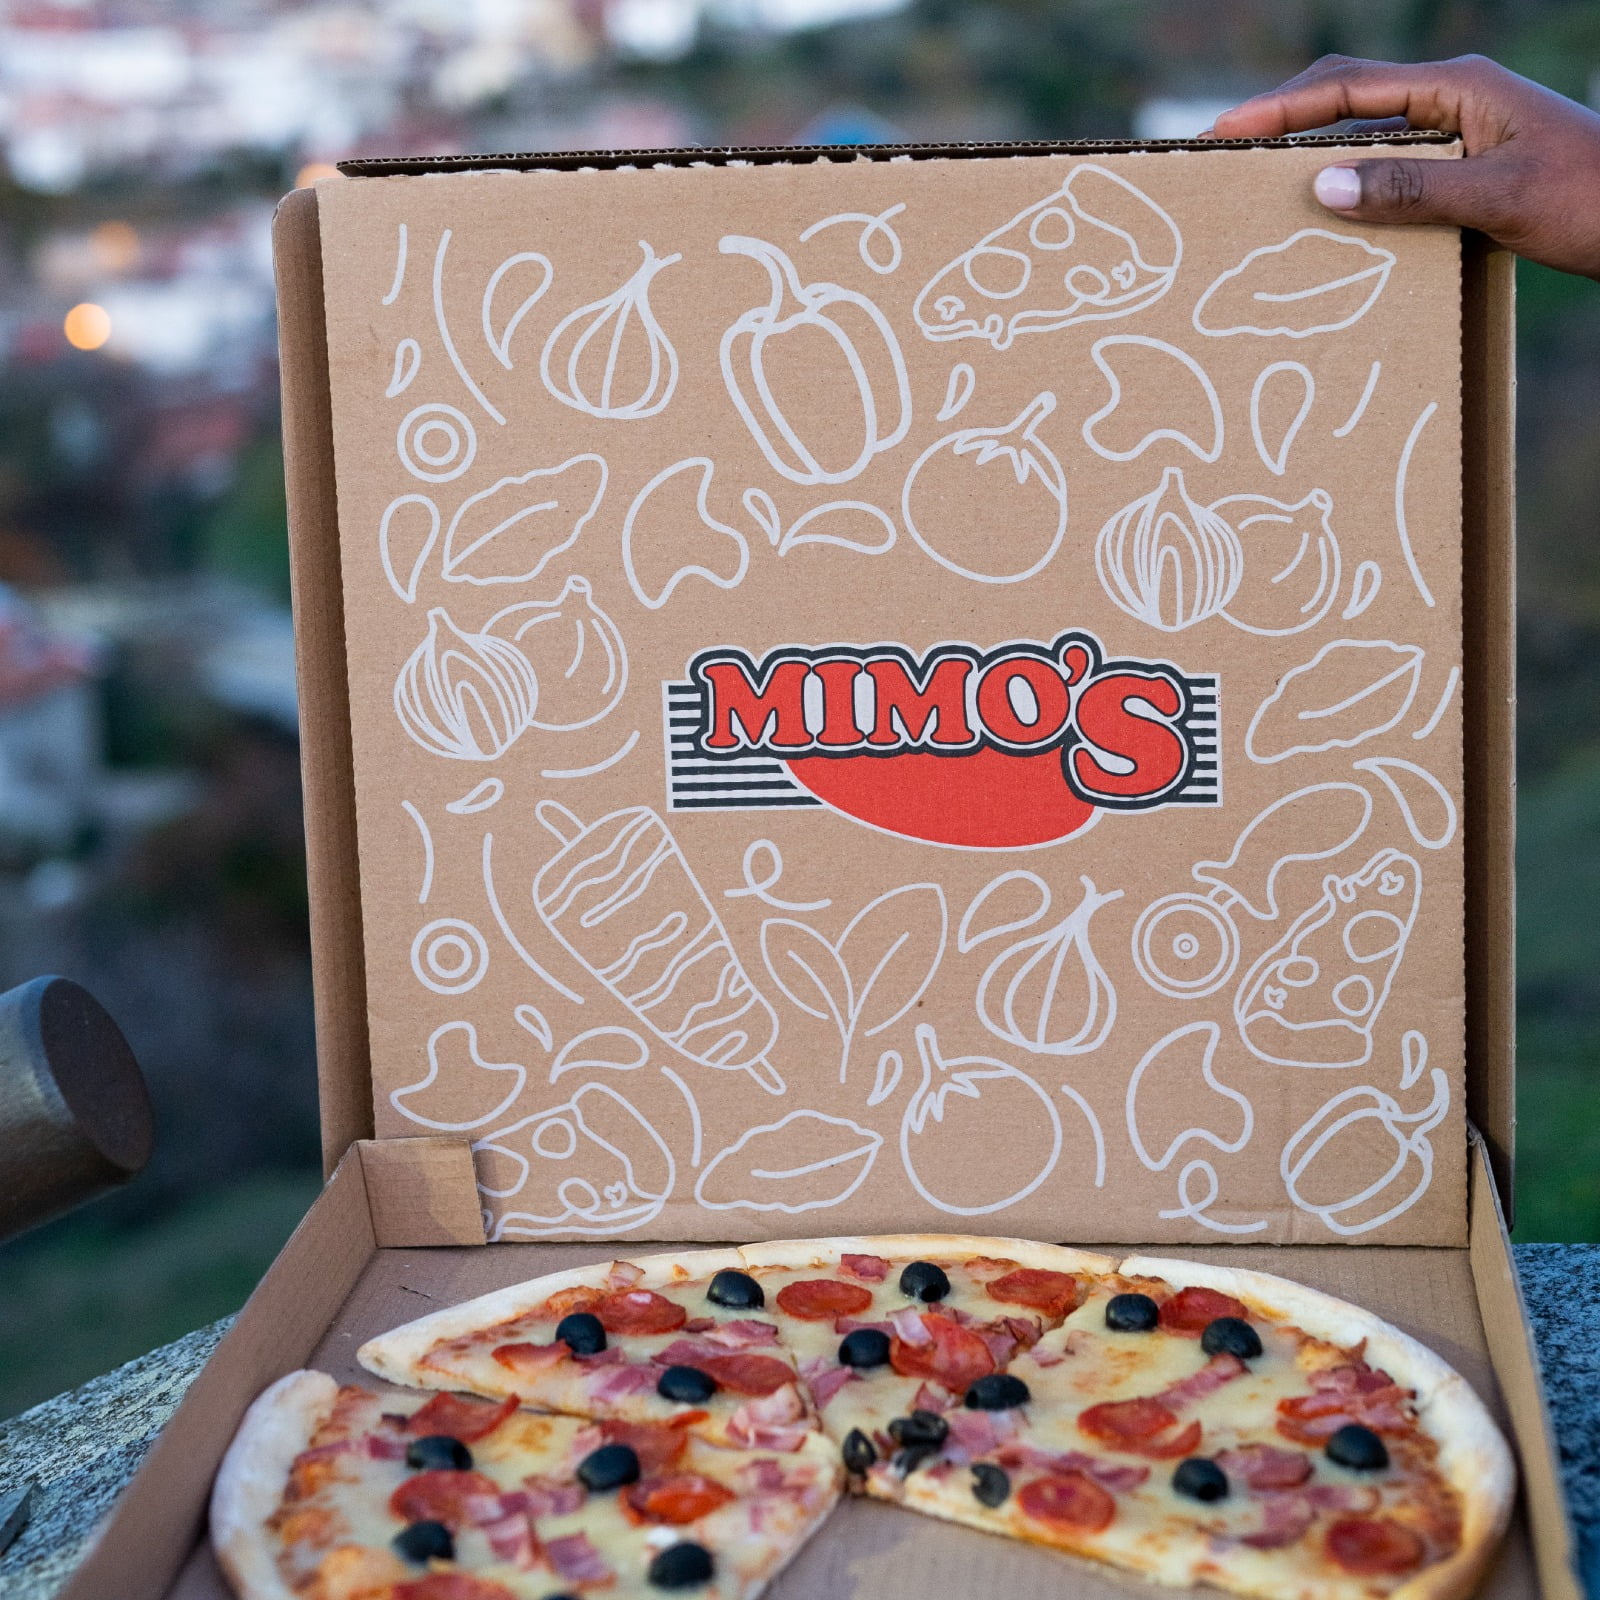 Os melhores locais para desfrutares da tua pizza Mimos!